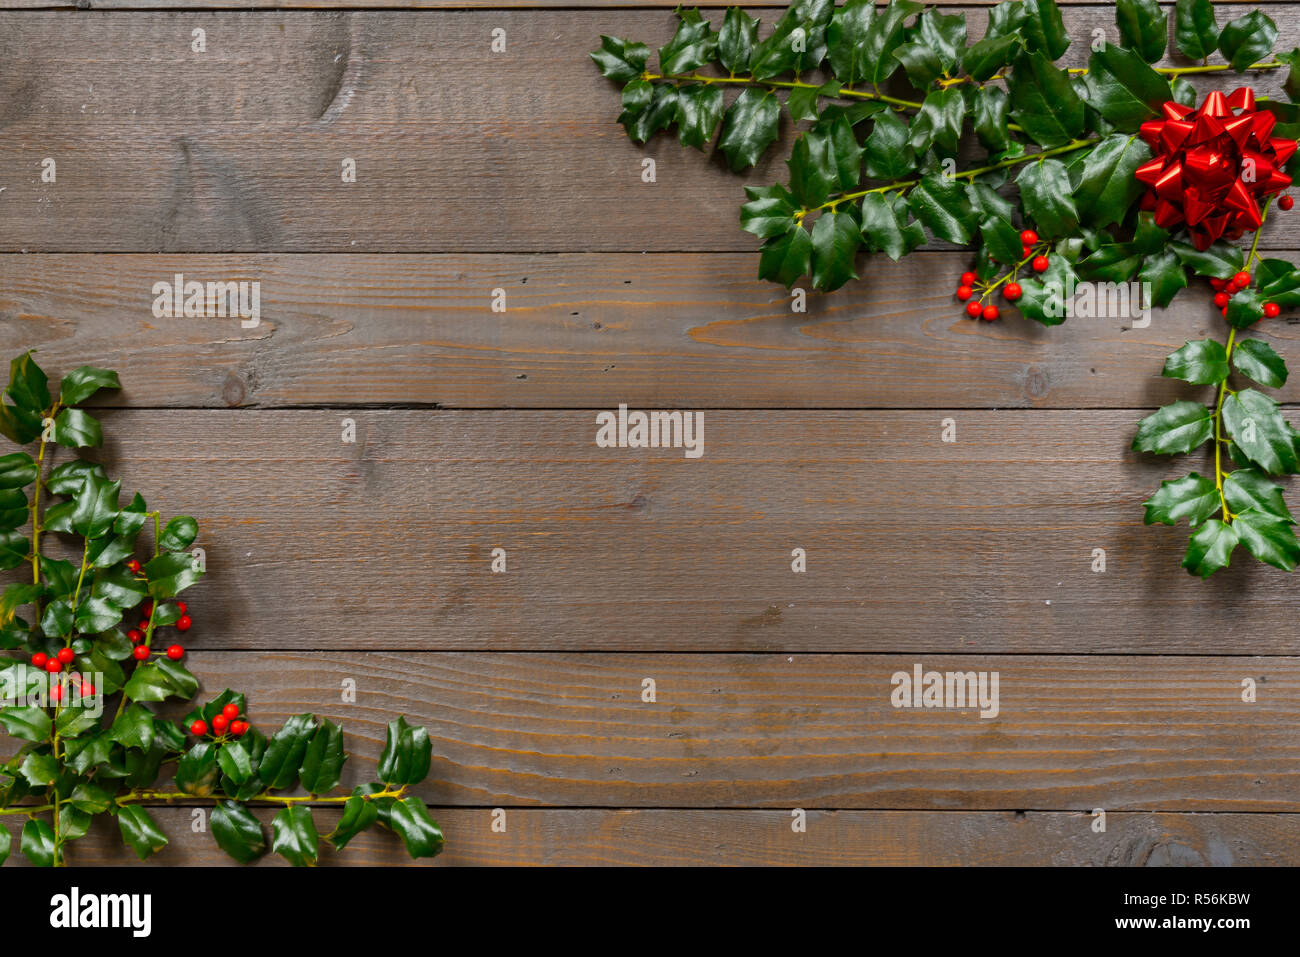 Natale holly con frutti di bosco su fondo in legno Foto Stock